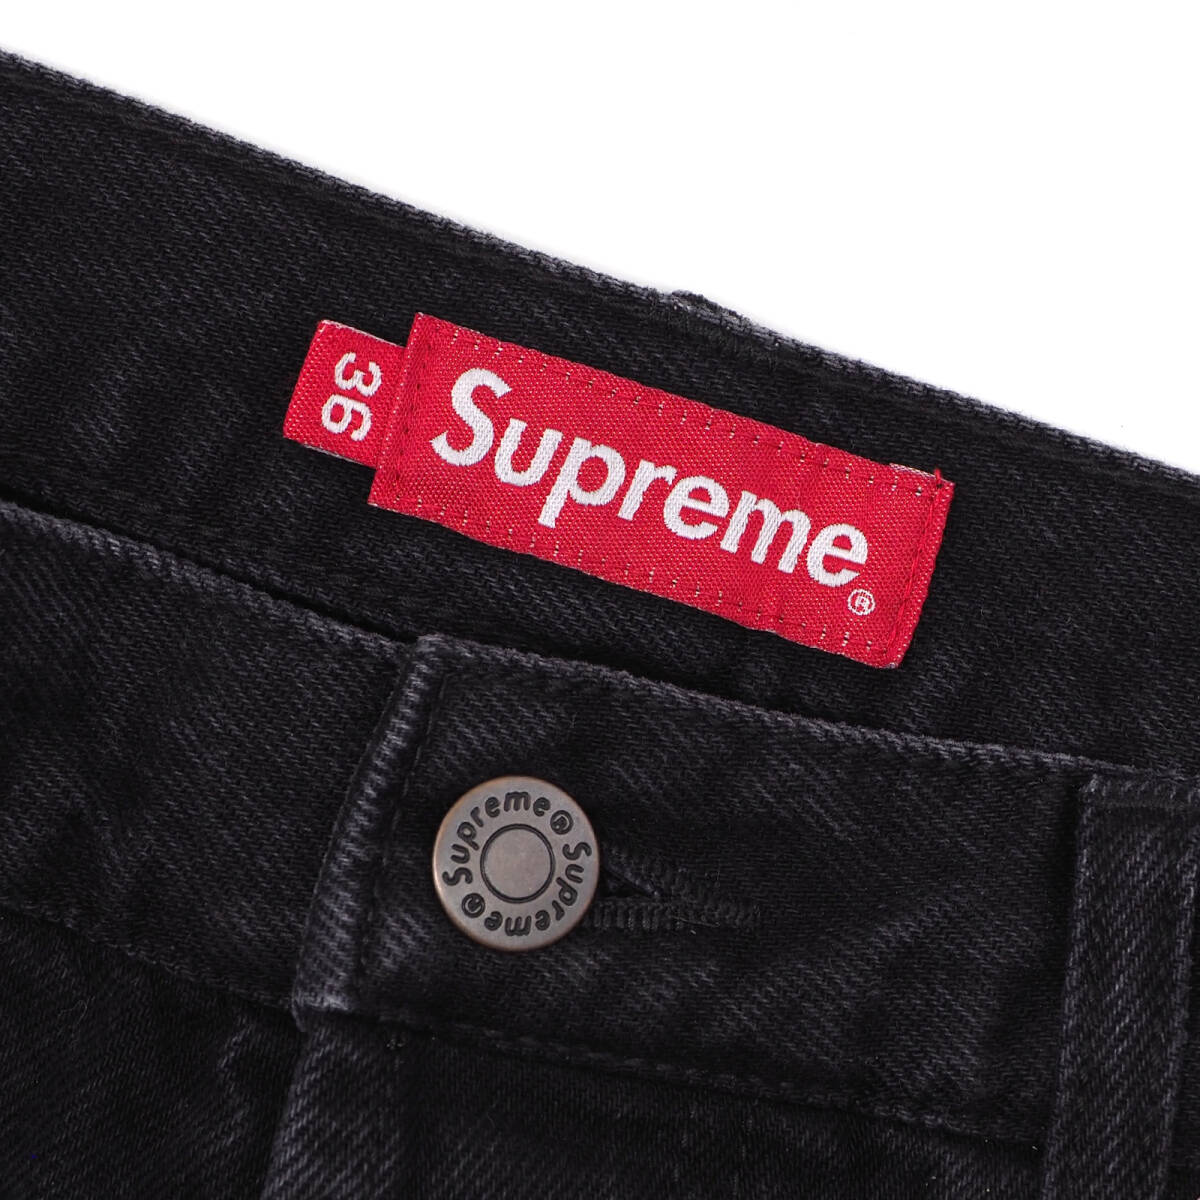 Supreme - Stone Washed Black Slim Jeans 黒W36 シュプリーム - ストーン ウォッシュド ブラック スリム ジーンズ 2023SS_画像3